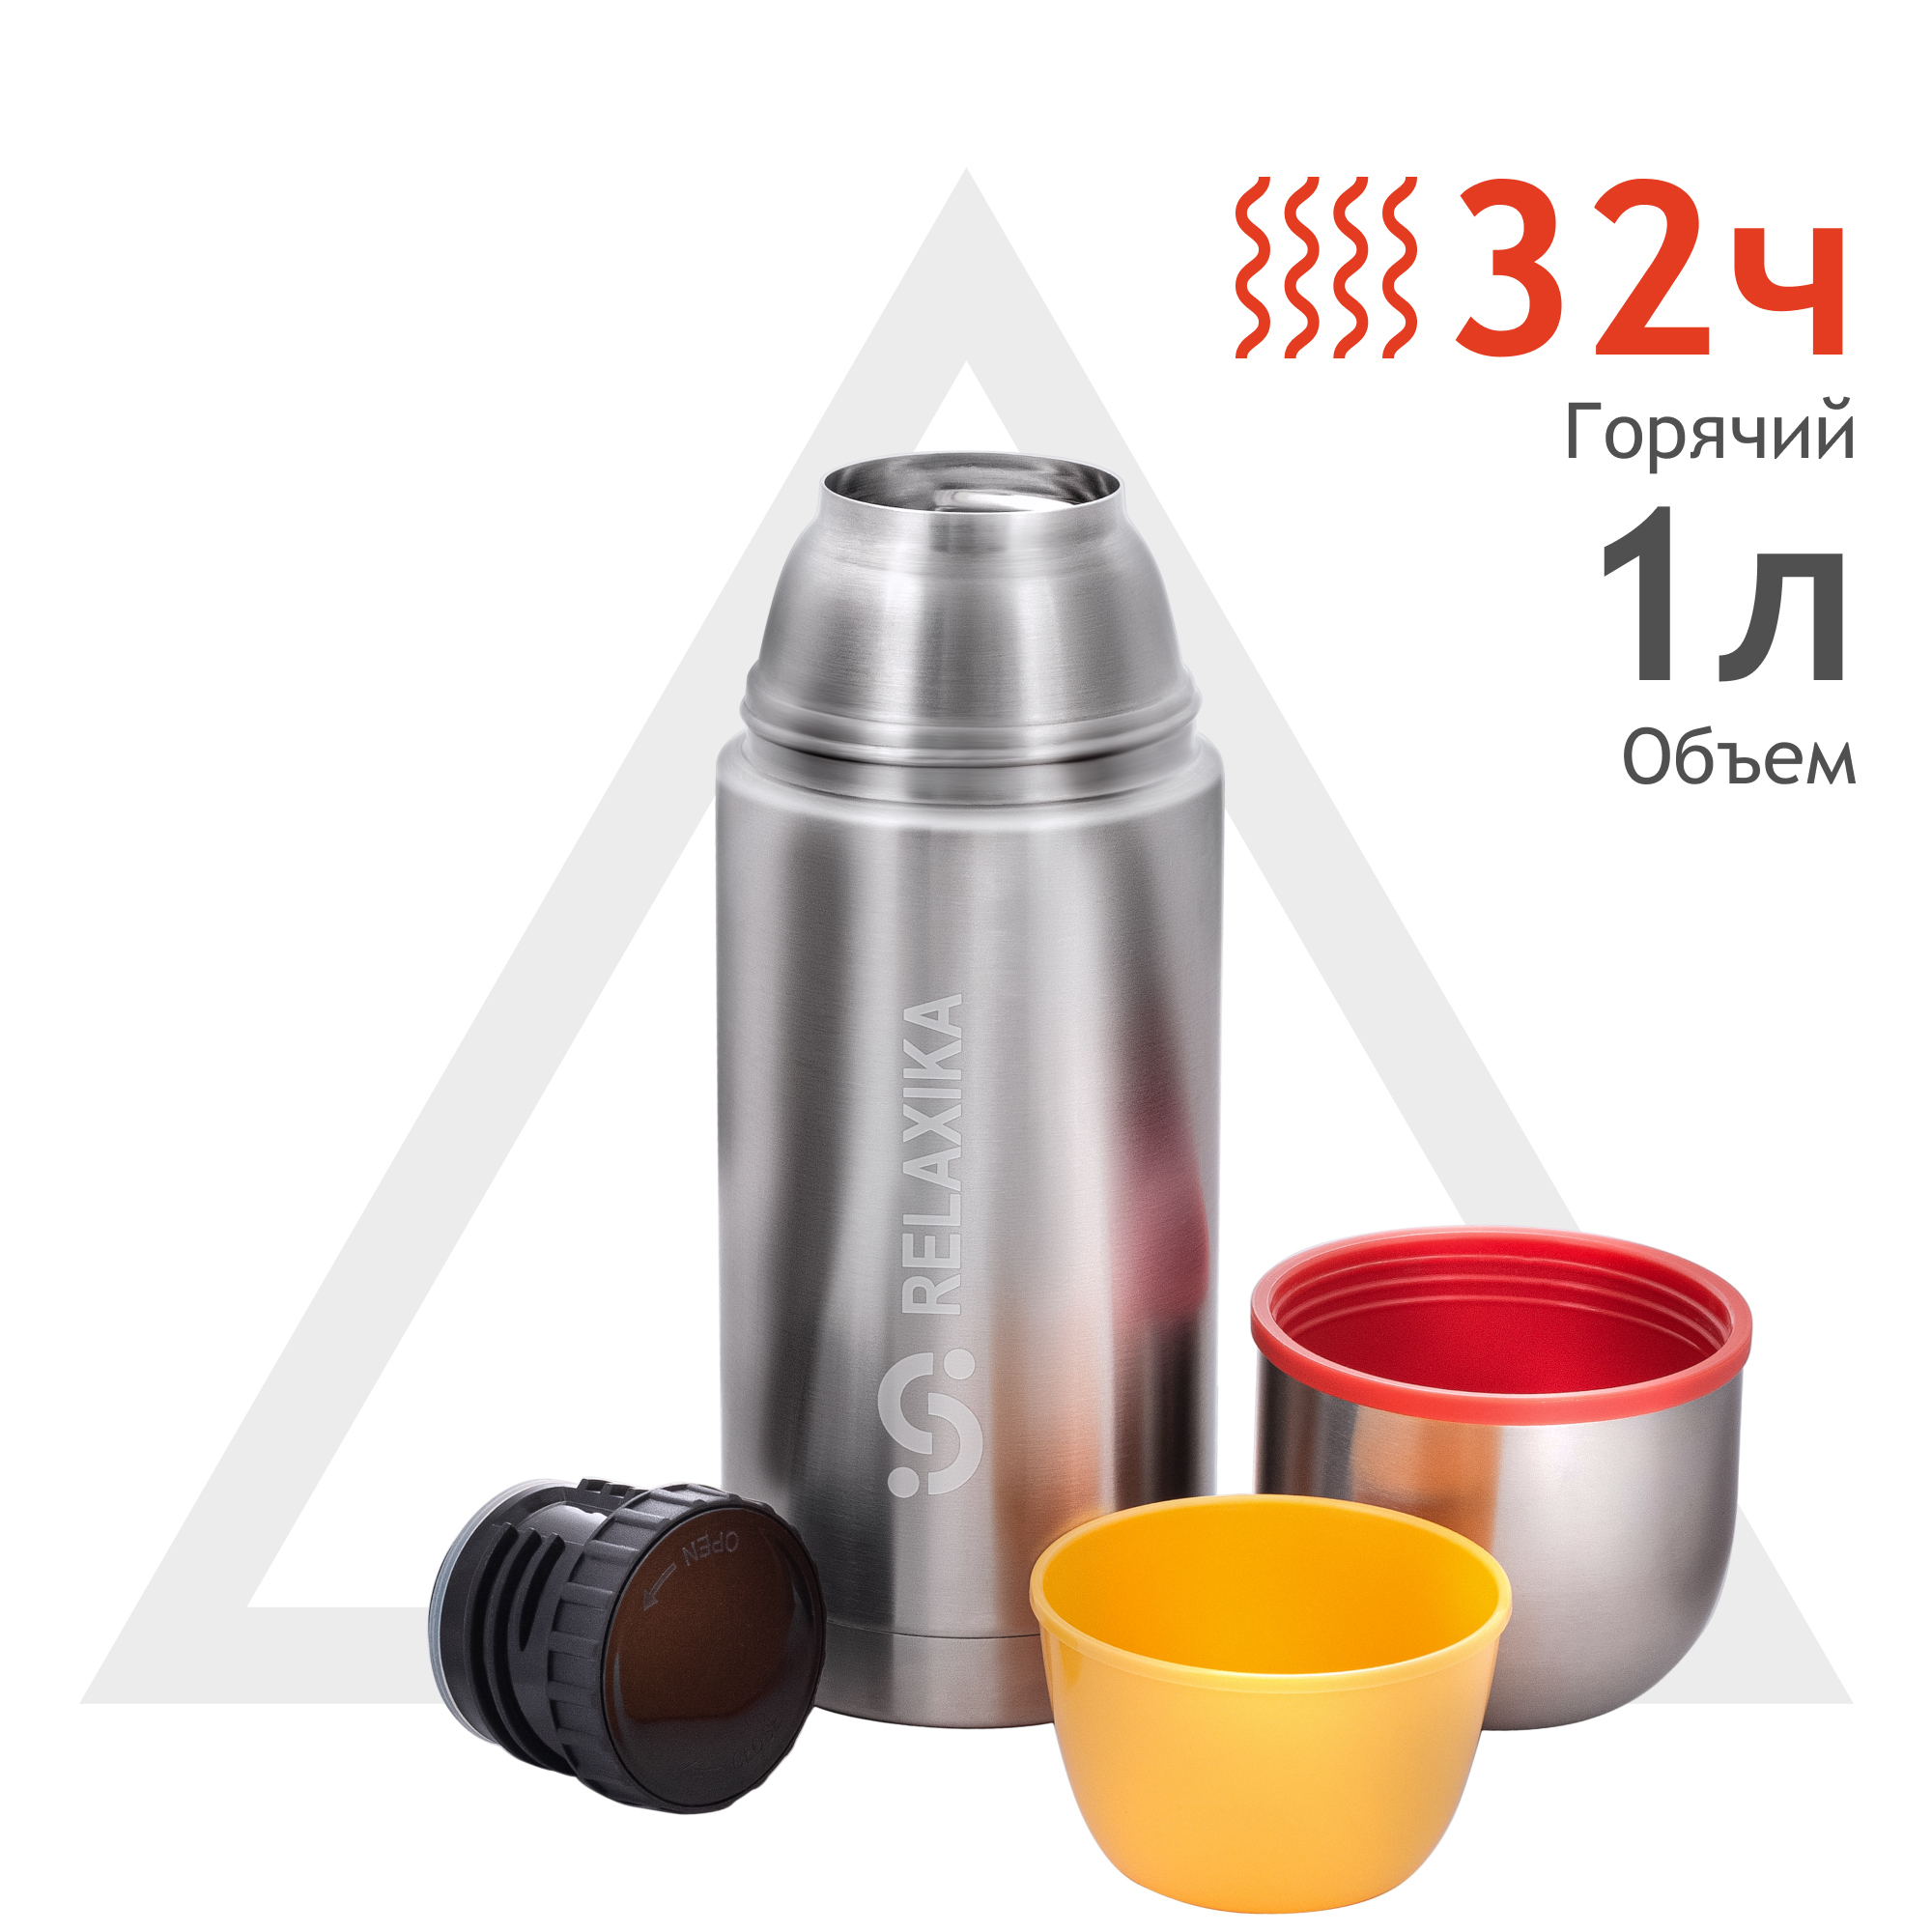 Термос Relaxika для напитков 102 1,0л 2 чашки (Стальной)